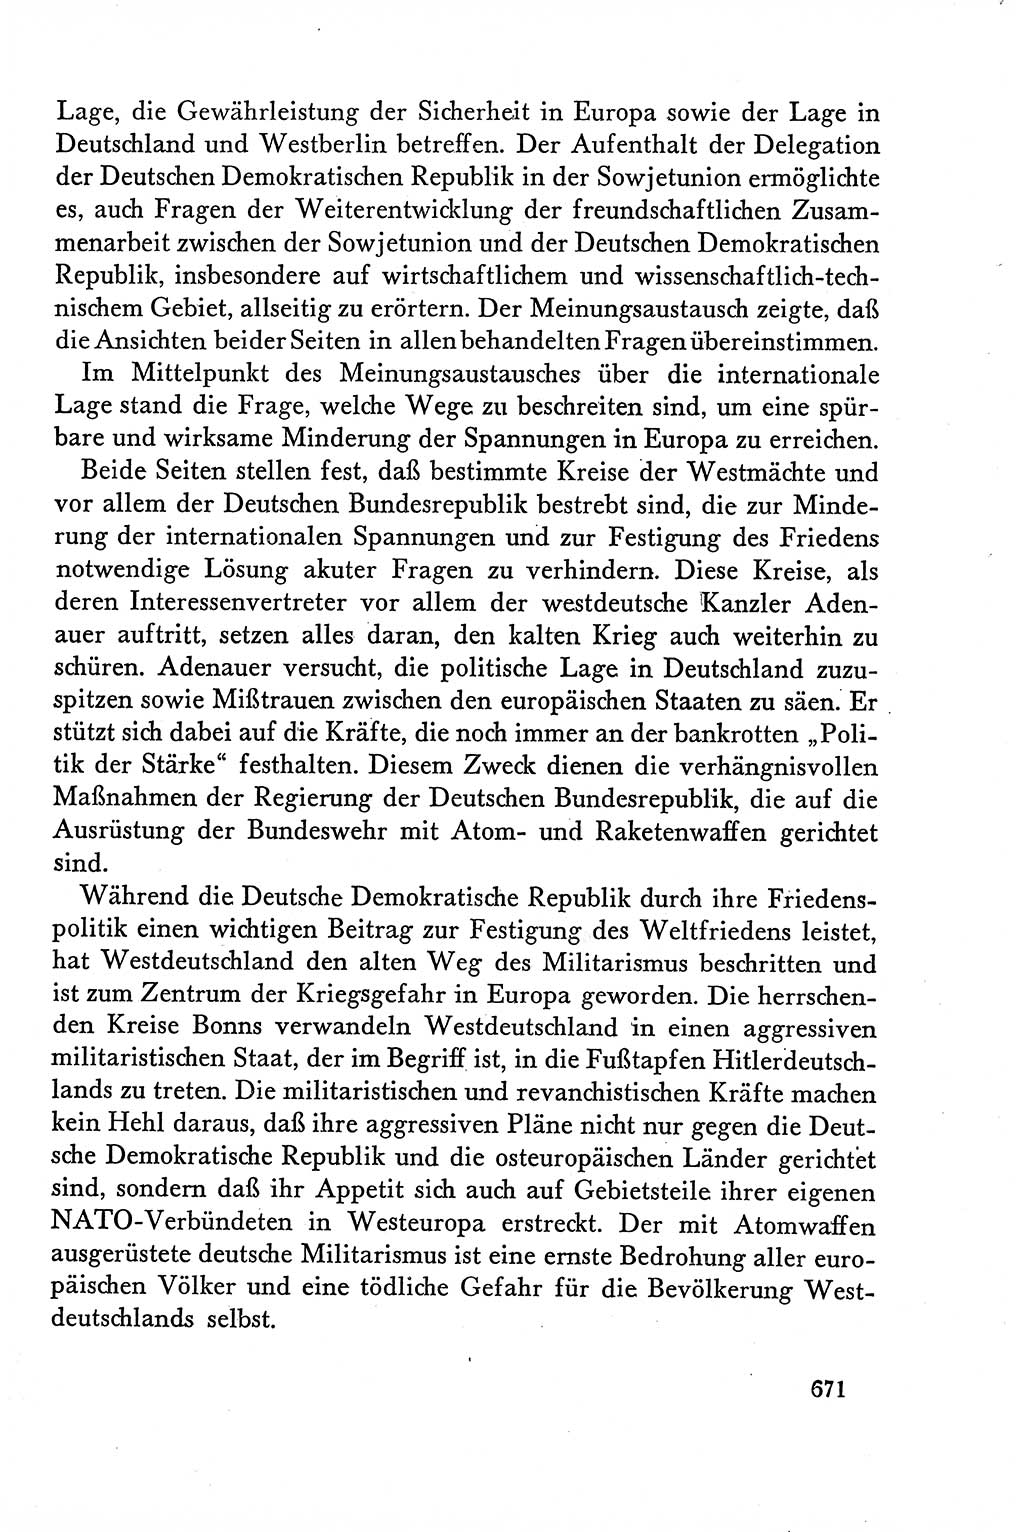 Dokumente der Sozialistischen Einheitspartei Deutschlands (SED) [Deutsche Demokratische Republik (DDR)] 1958-1959, Seite 671 (Dok. SED DDR 1958-1959, S. 671)